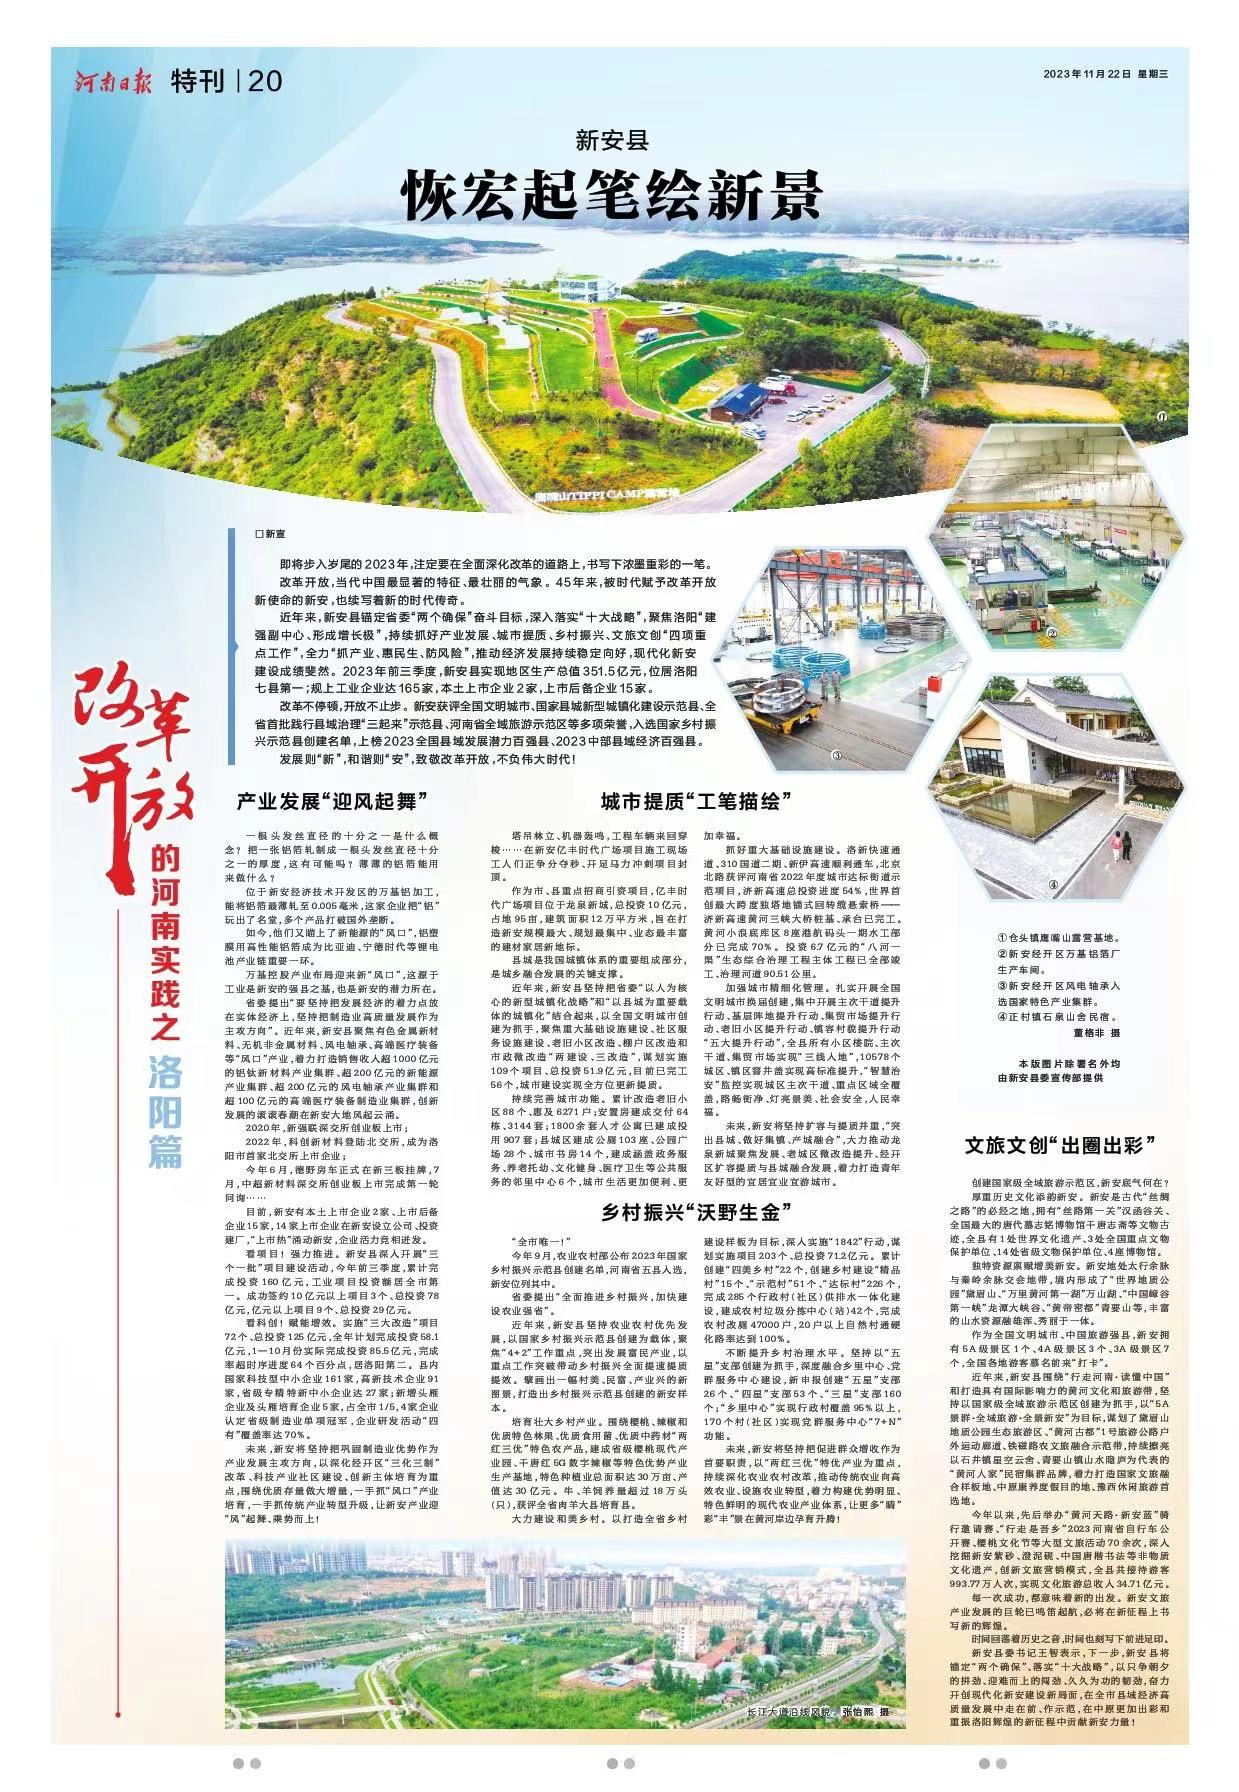 《河南日报》今日推出“改革开放的河南实践”洛阳篇：潮涌河洛